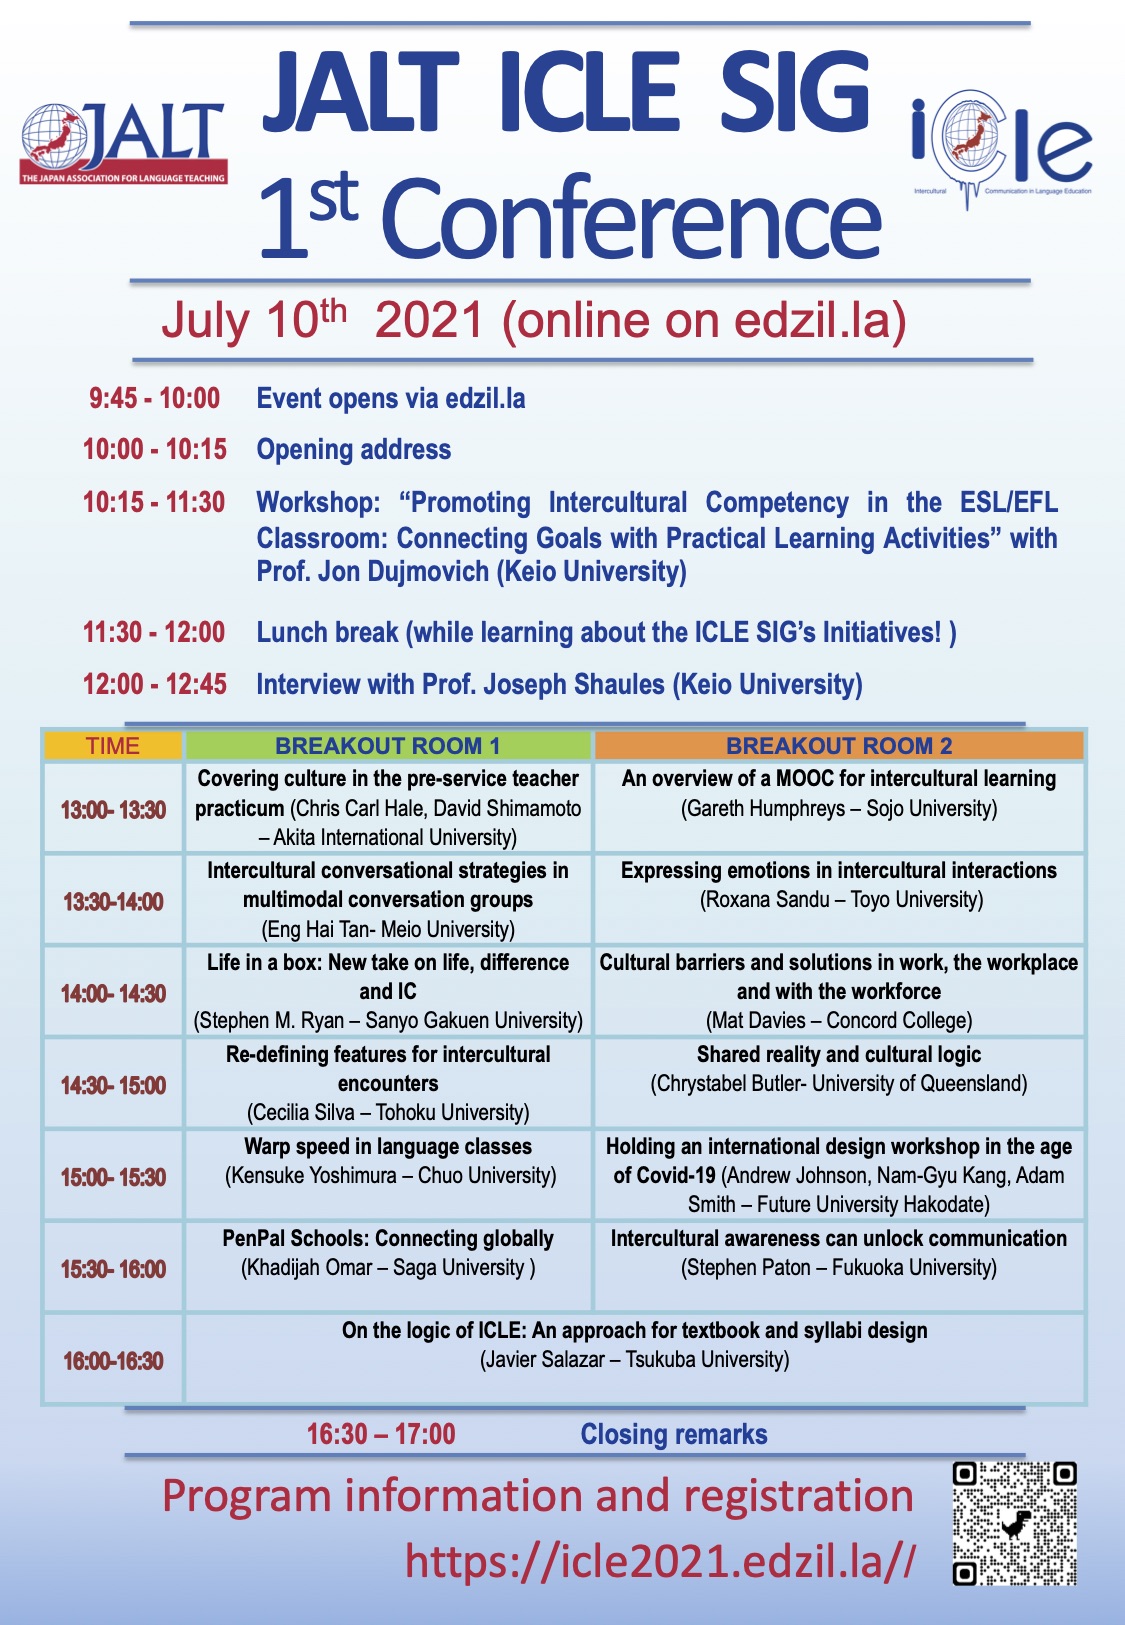 JALT ICLE SIG 1st Conference Poster